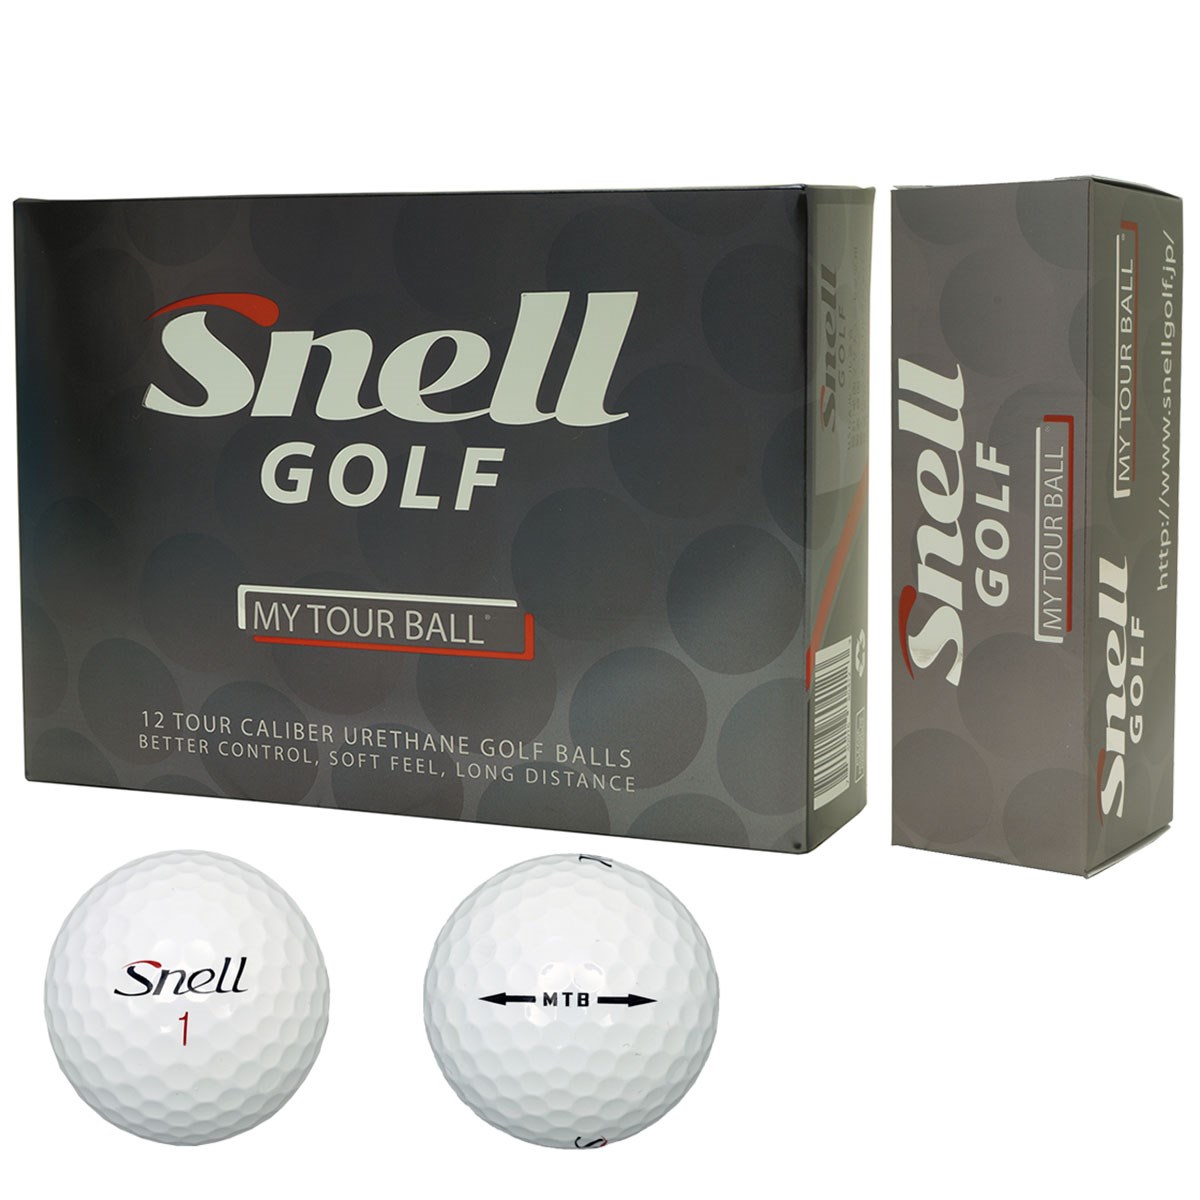 マイツアーボール スネルゴルフ Snell Golf 通販 Gdoゴルフショップ